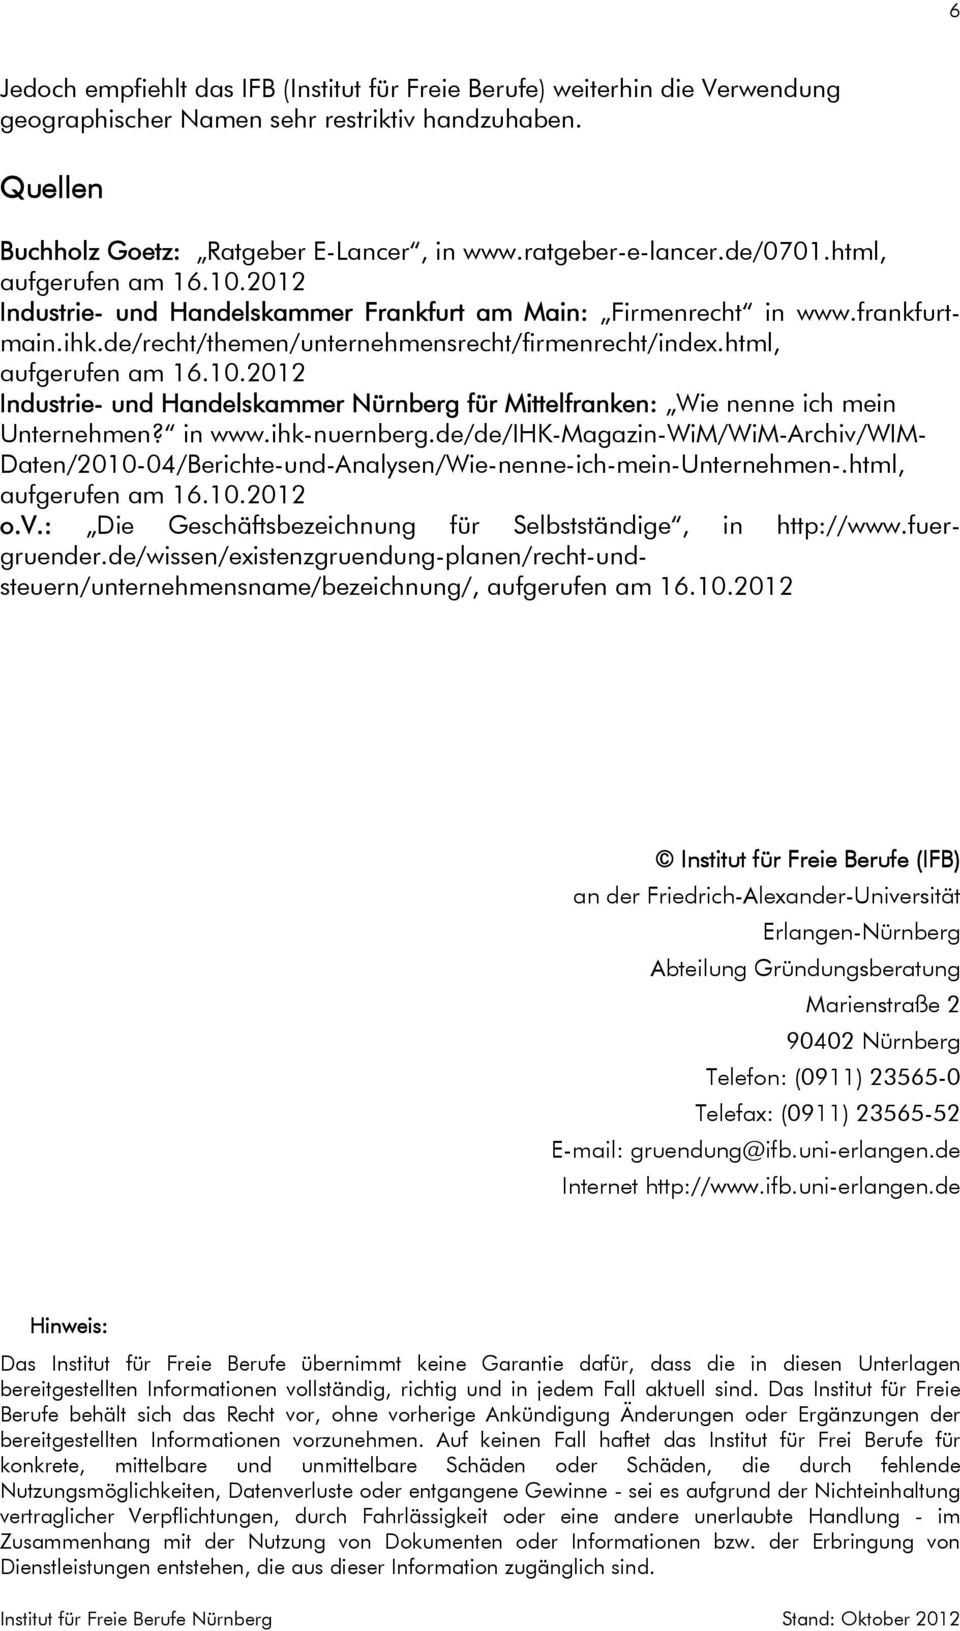 html, Industrie- und Handelskammer Nürnberg für Mittelfranken: Wie nenne ich mein Unternehmen? in www.ihk-nuernberg.